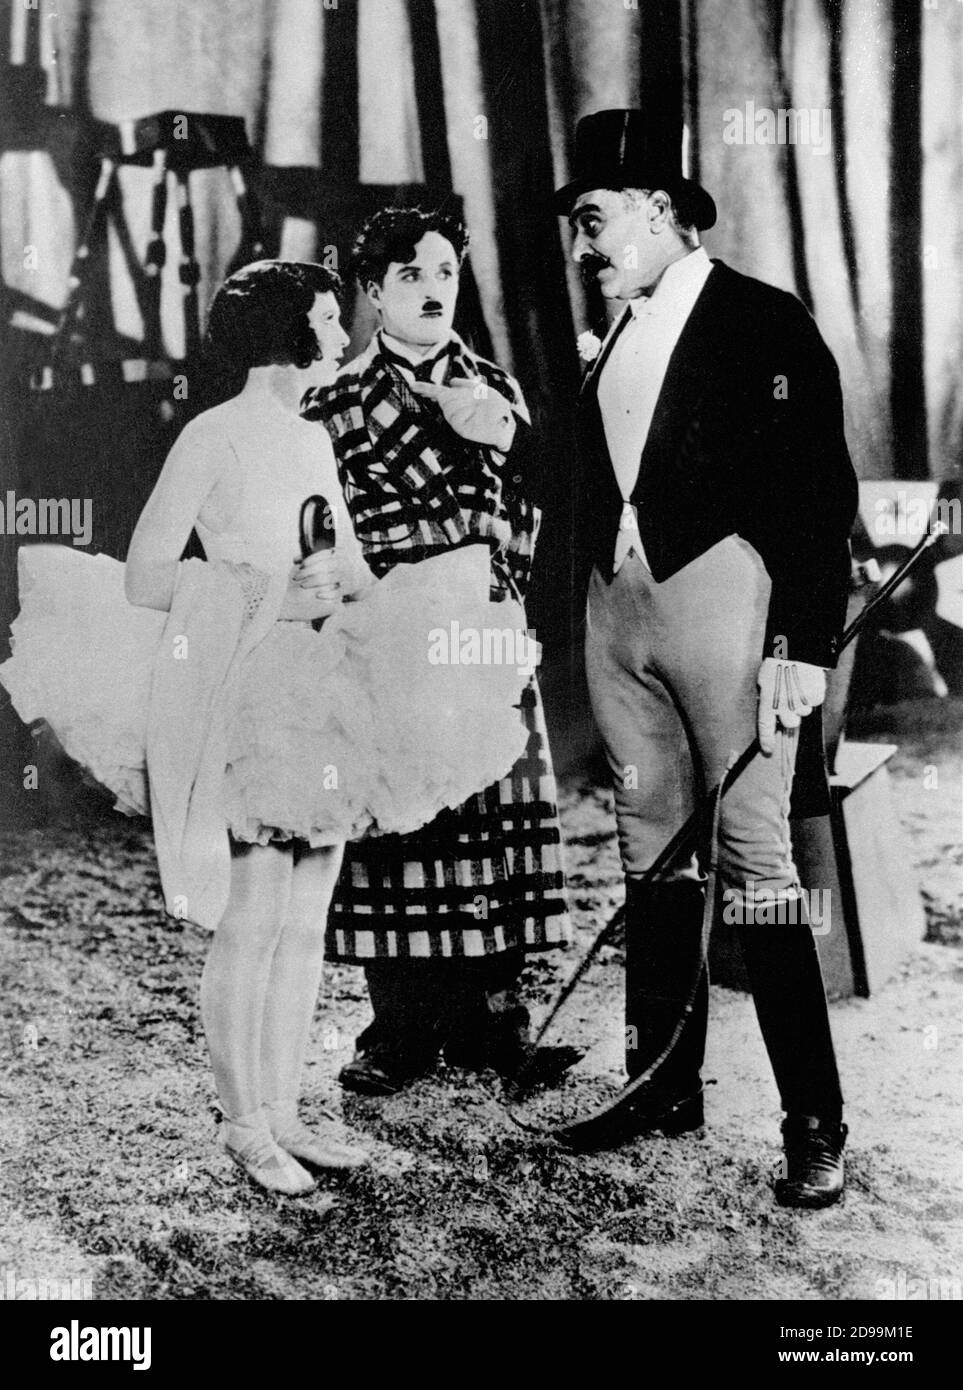 CHARLES CHAPLIN ( 1889 - 1977 ) in THE CIRCUS ( 1928 - Il Circo ) - Charlot  - ballerina - vestaglia - dressing gown - hat - cappello - frusta - whip  ---- Archivio GBB Stock Photo - Alamy